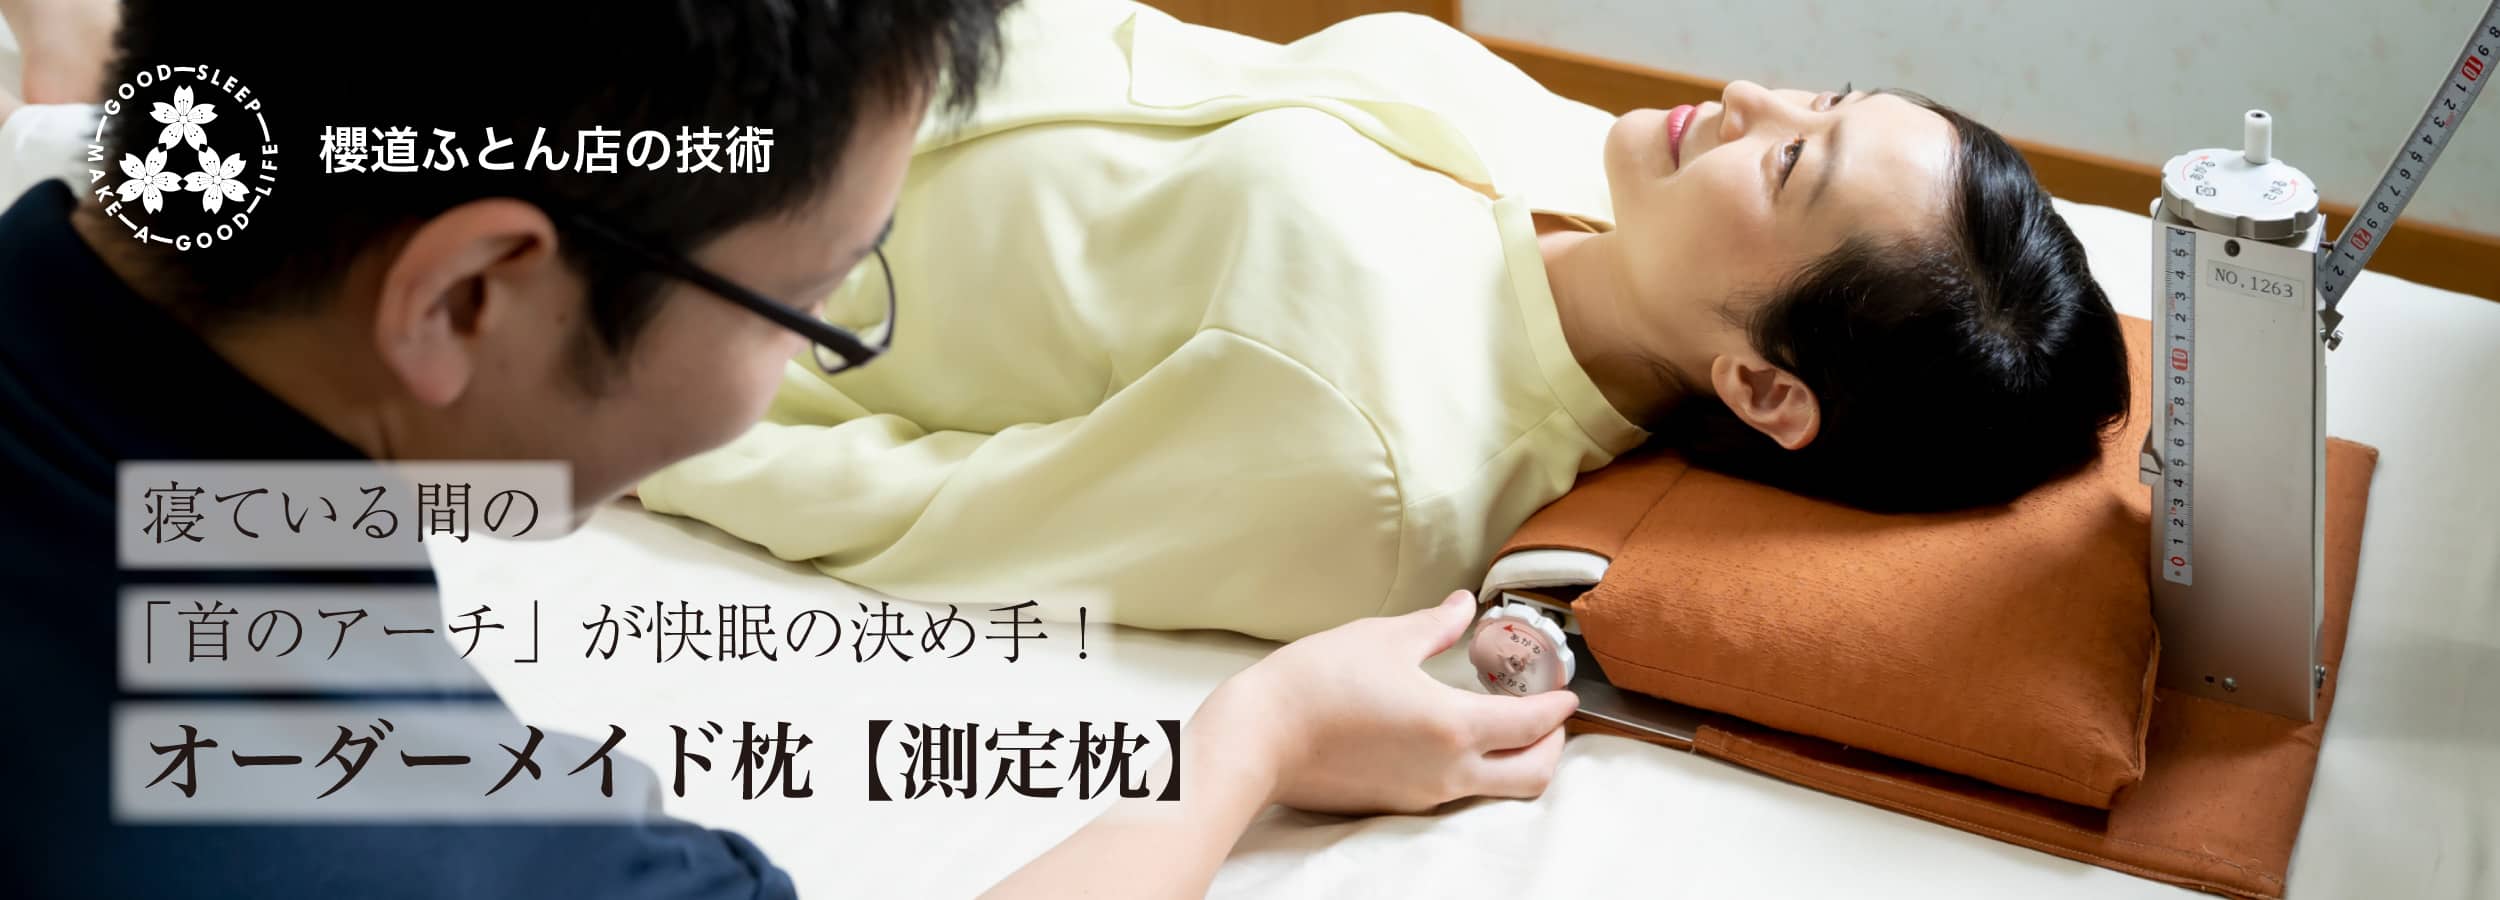 櫻道ふとん店のオーダーメイド枕「測定枕」